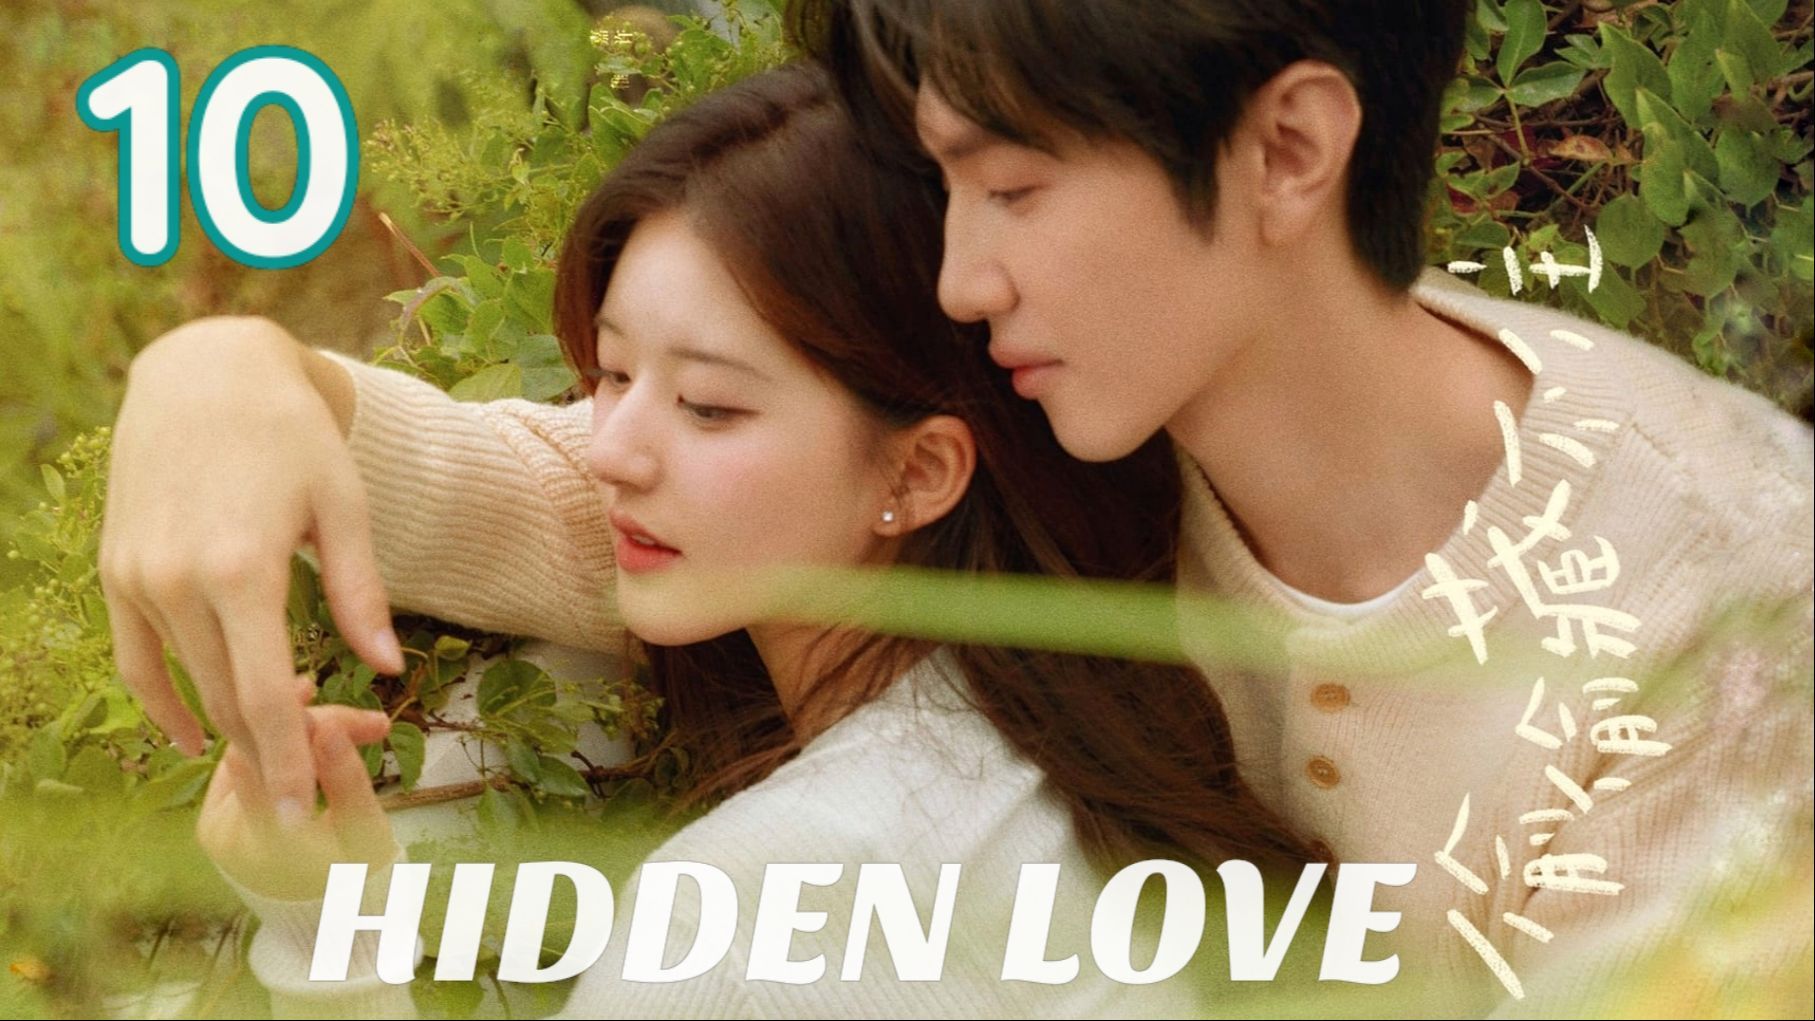 Hidden Love Ep 10 hidden love ep.10 - Bilibili